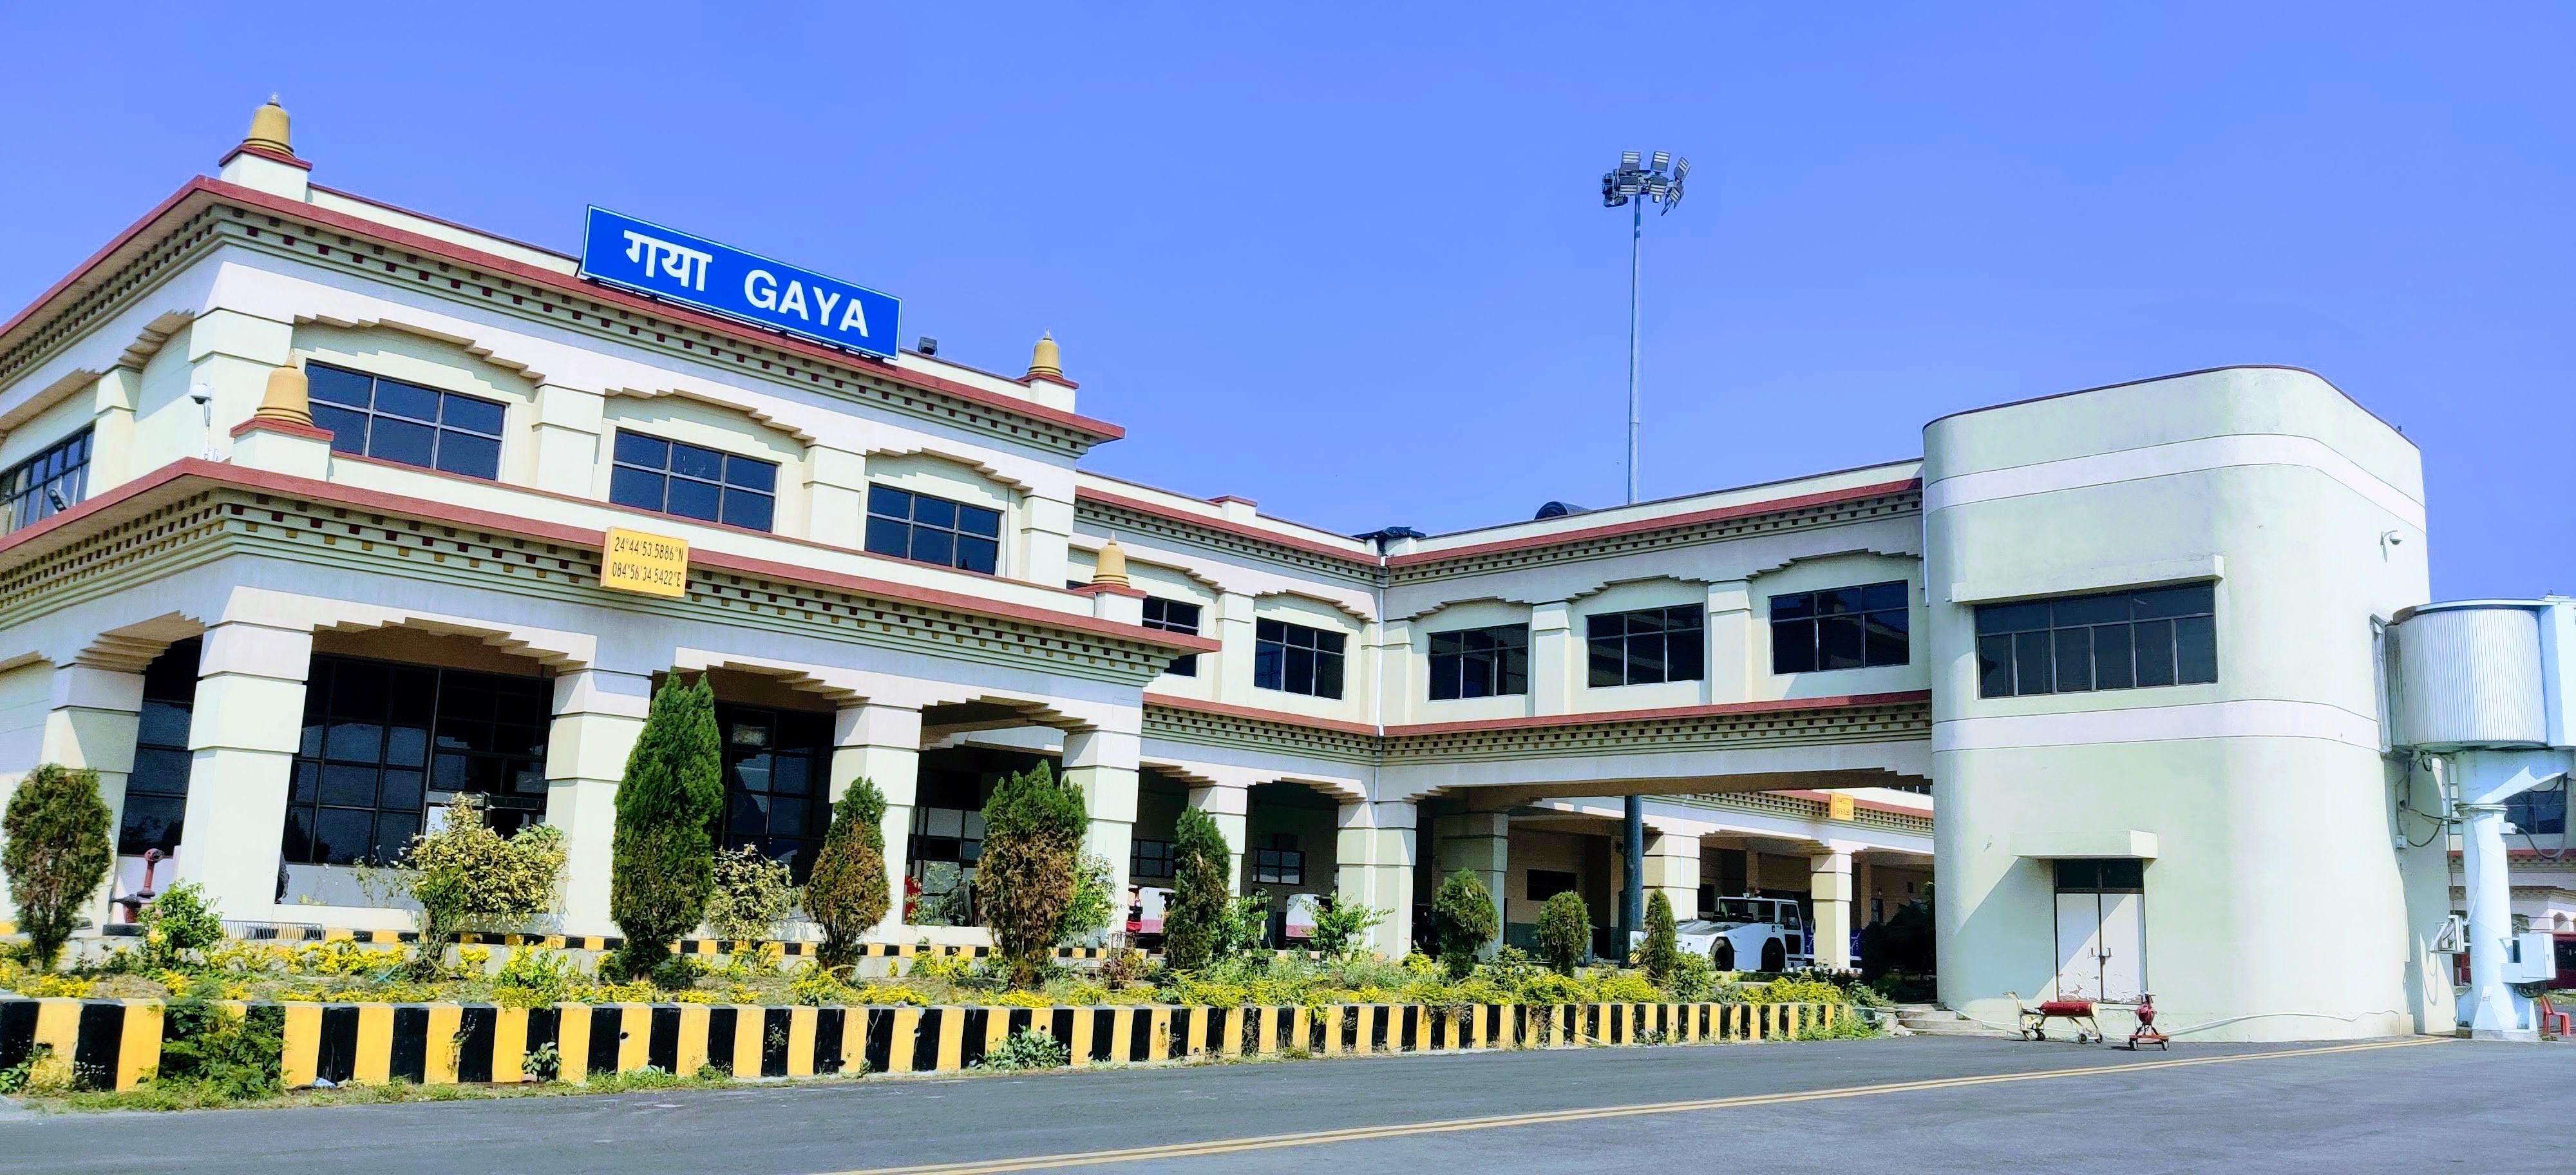 View of the Gaya Airport, Gaya, Bihar, India